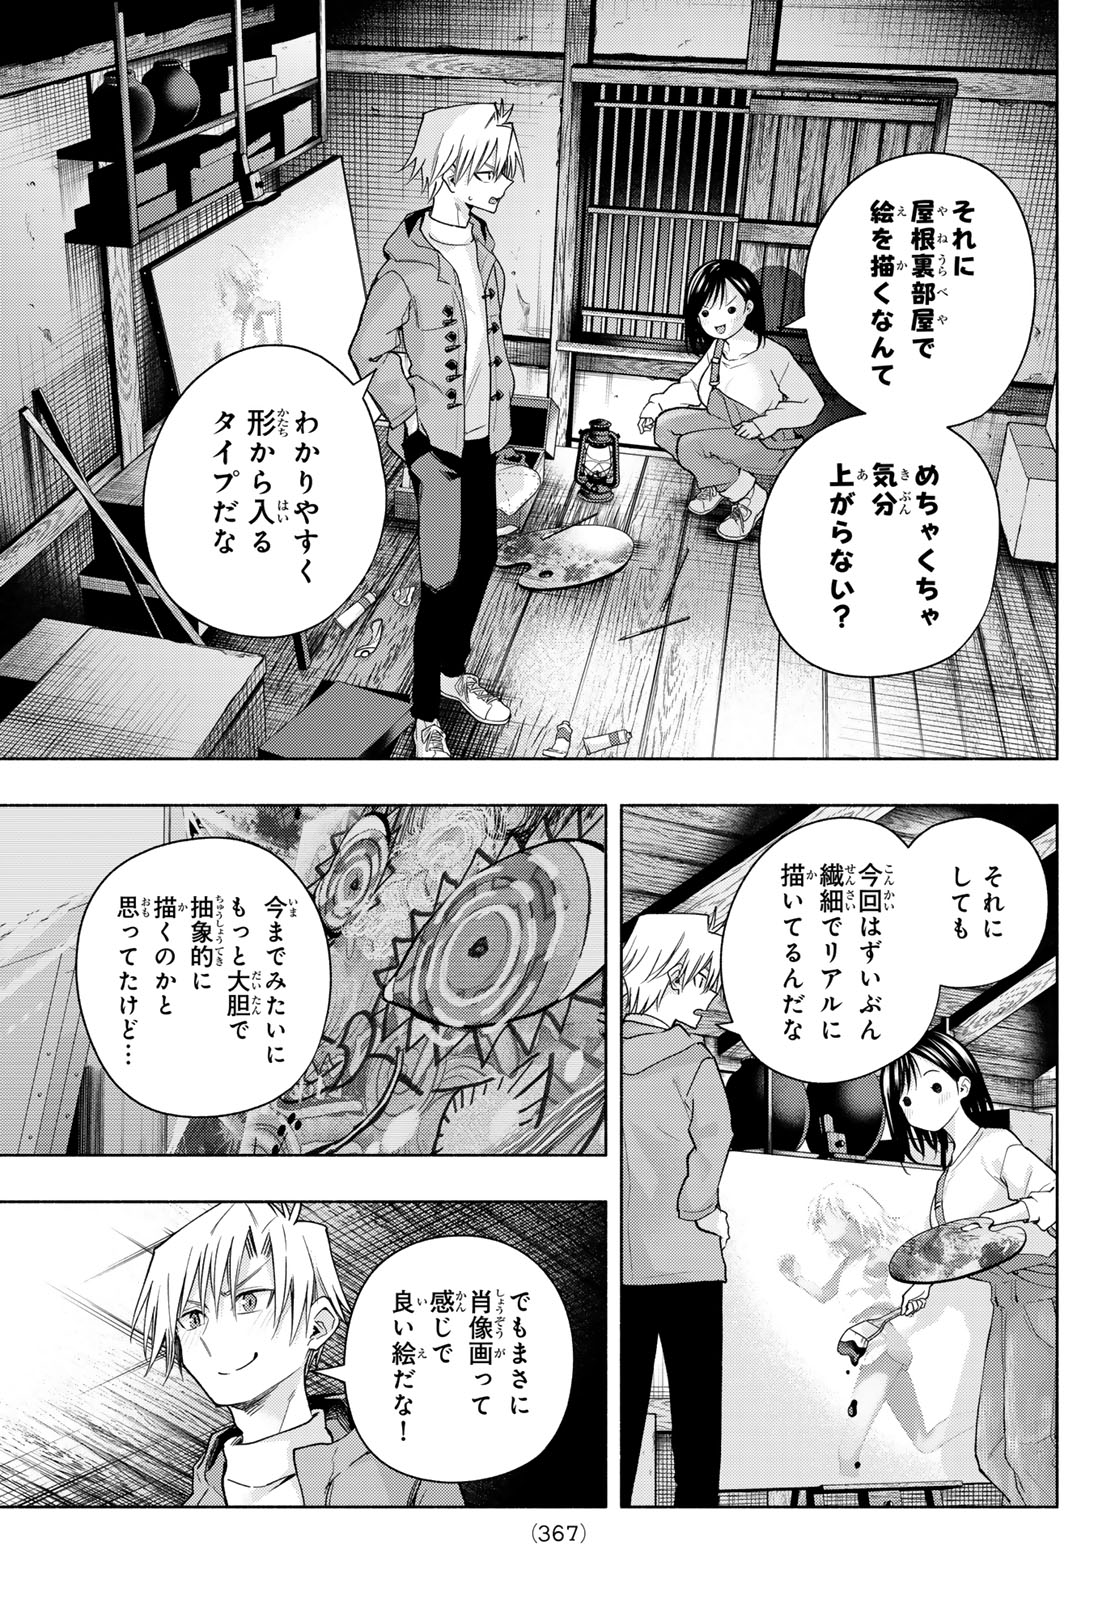 Amagami-san Chi no Enmusubi - Chapter 139 - Page 9